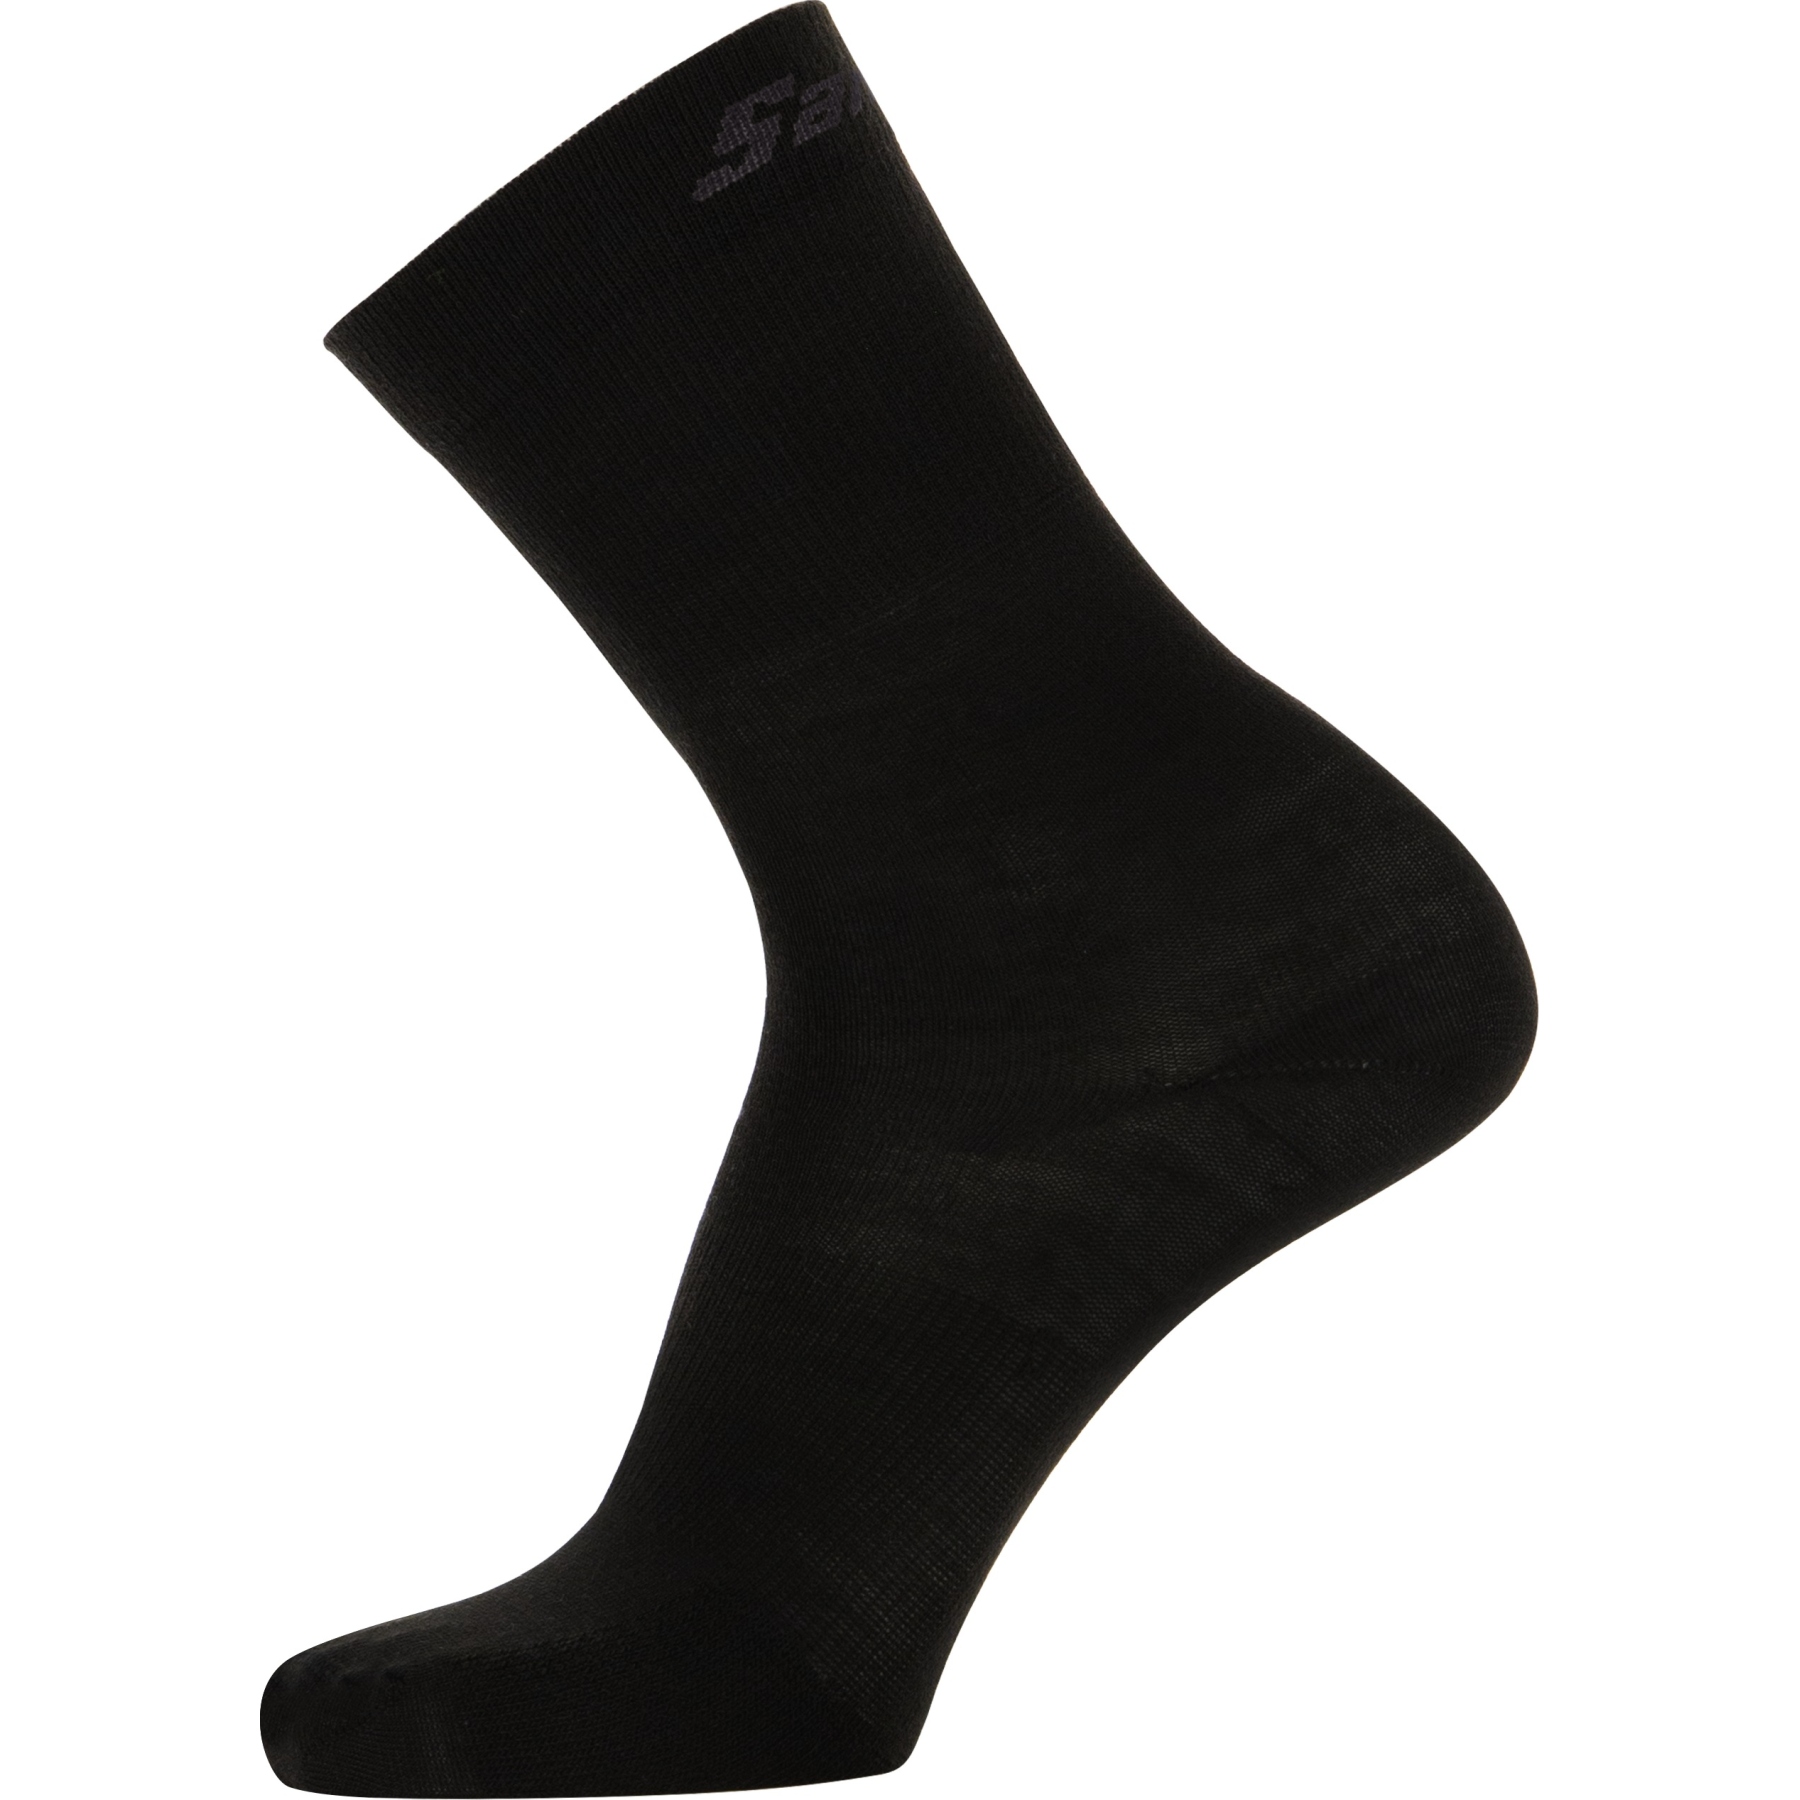 Produktbild von Santini High Profile Woll Socken 1W652WINWOOL - schwarz NE